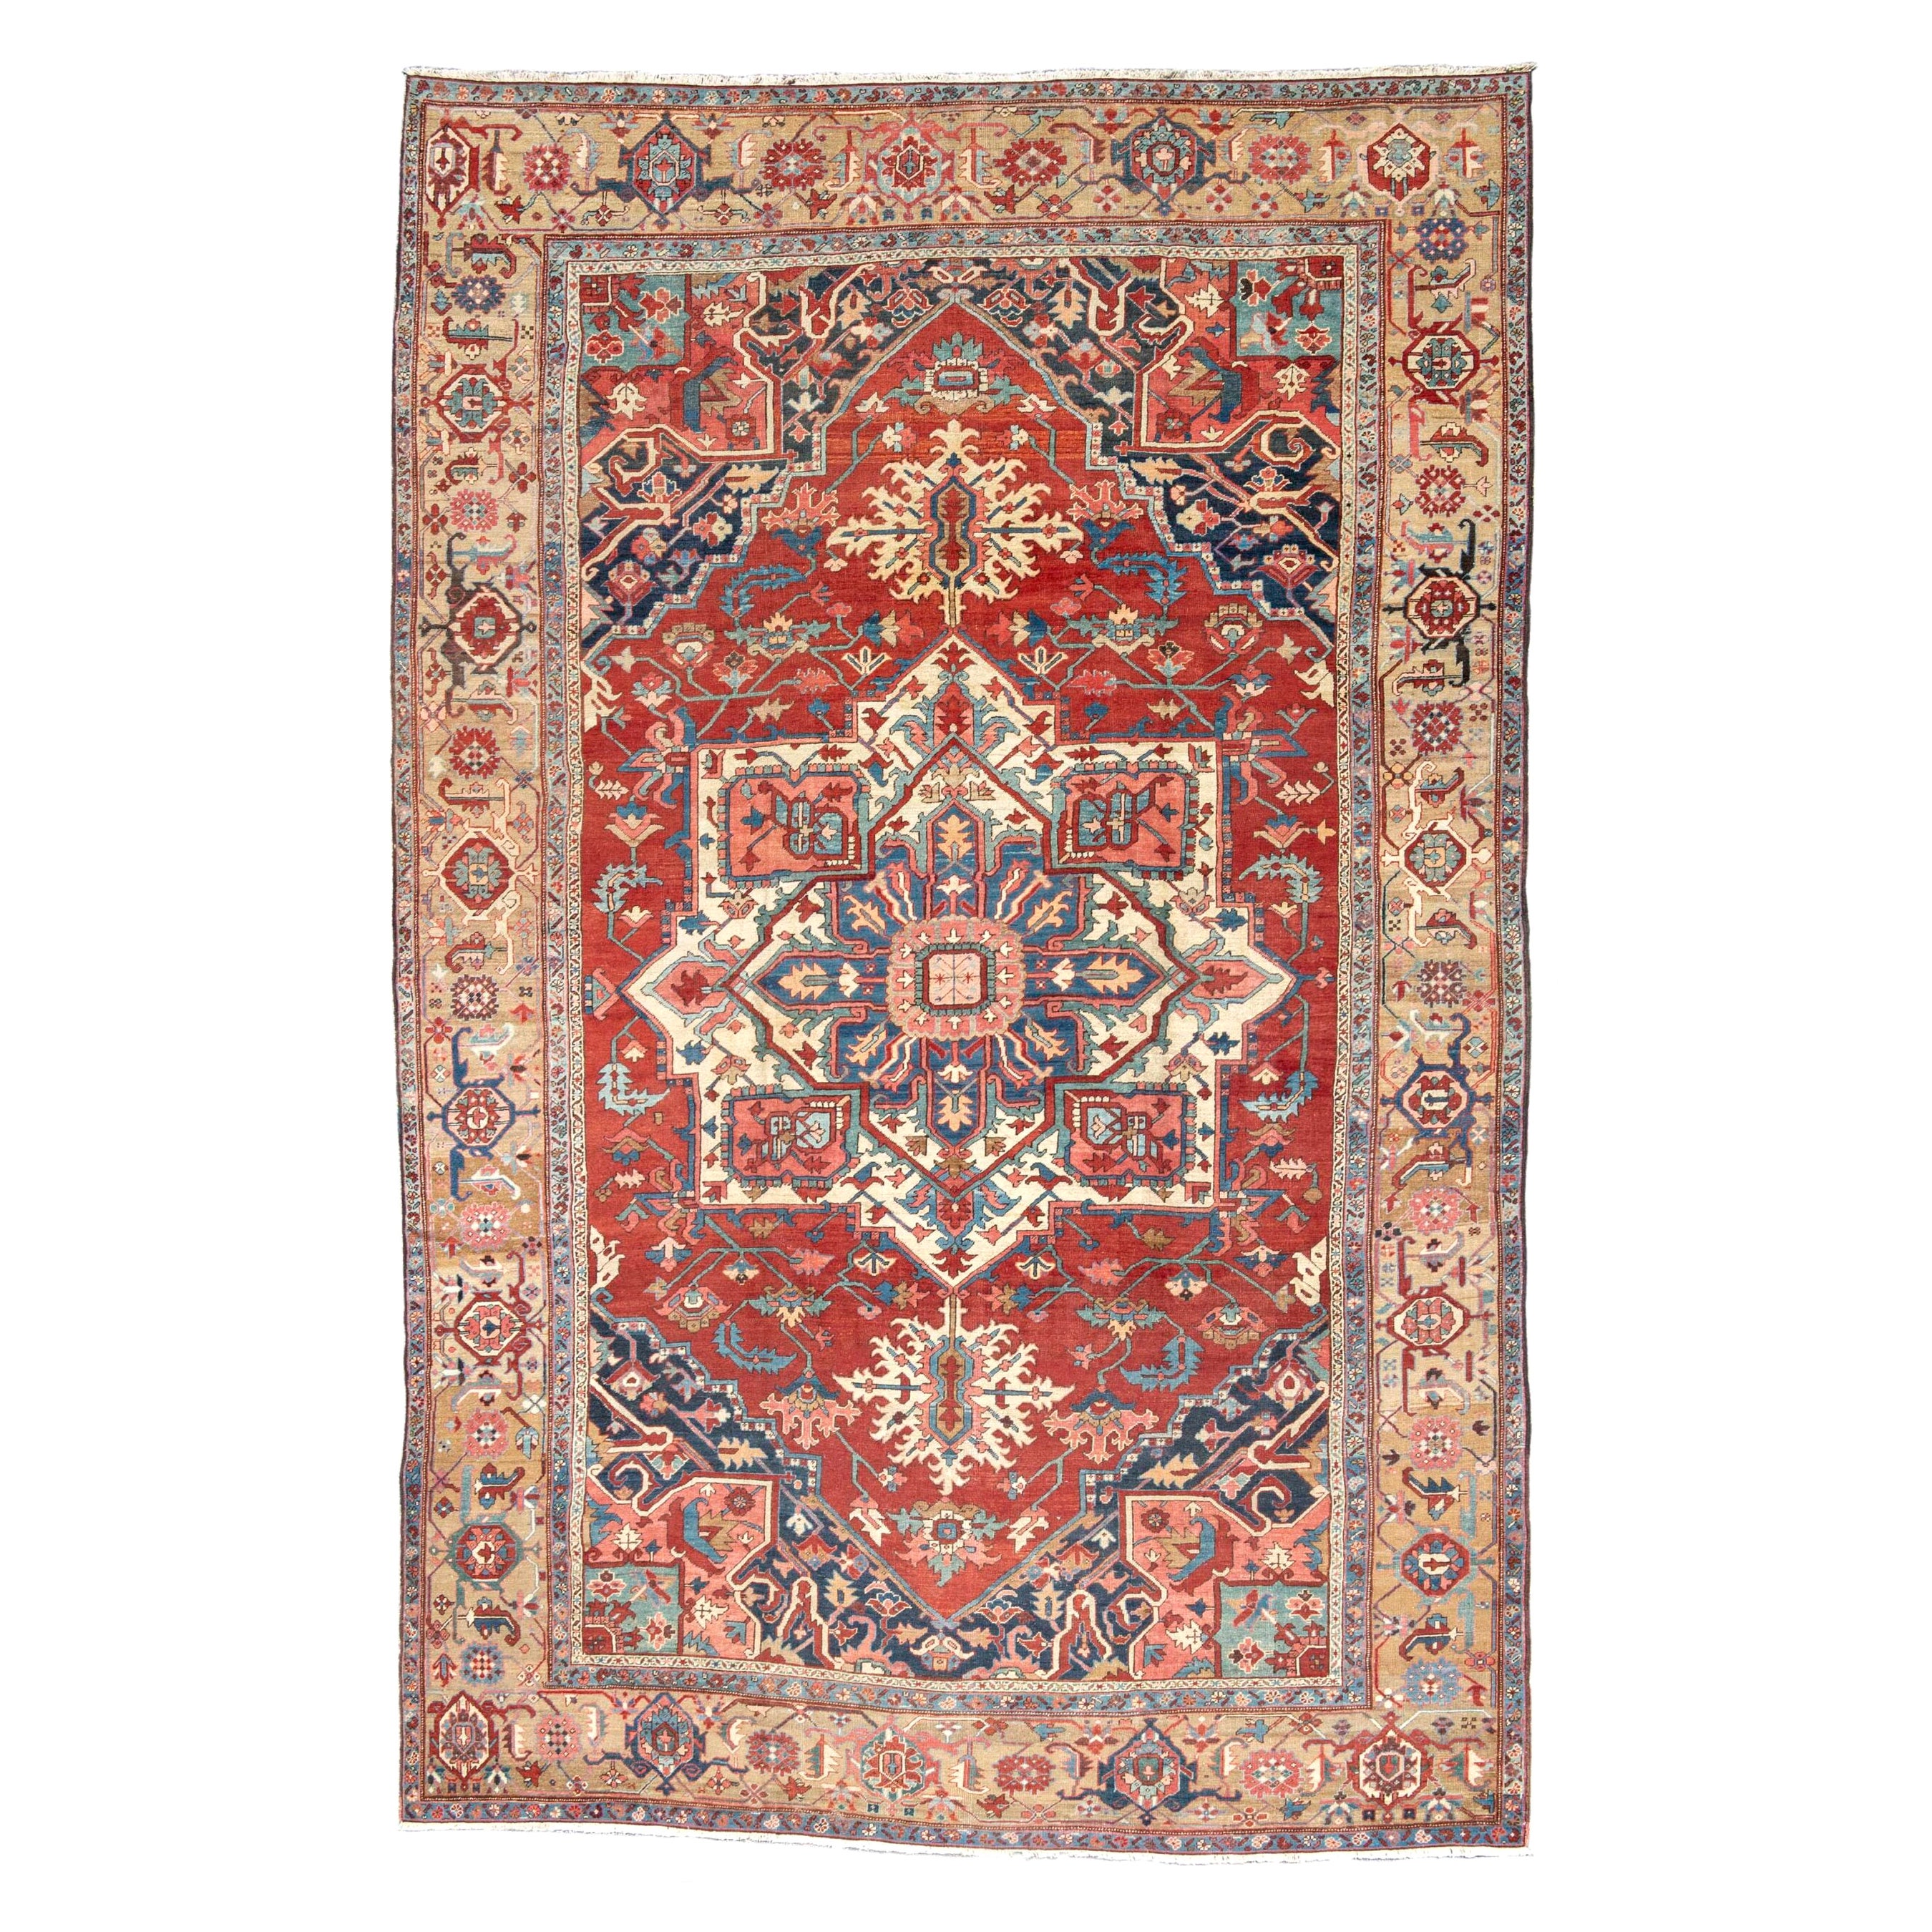 Antique Large Persian Serapi Carpet, c. 1900